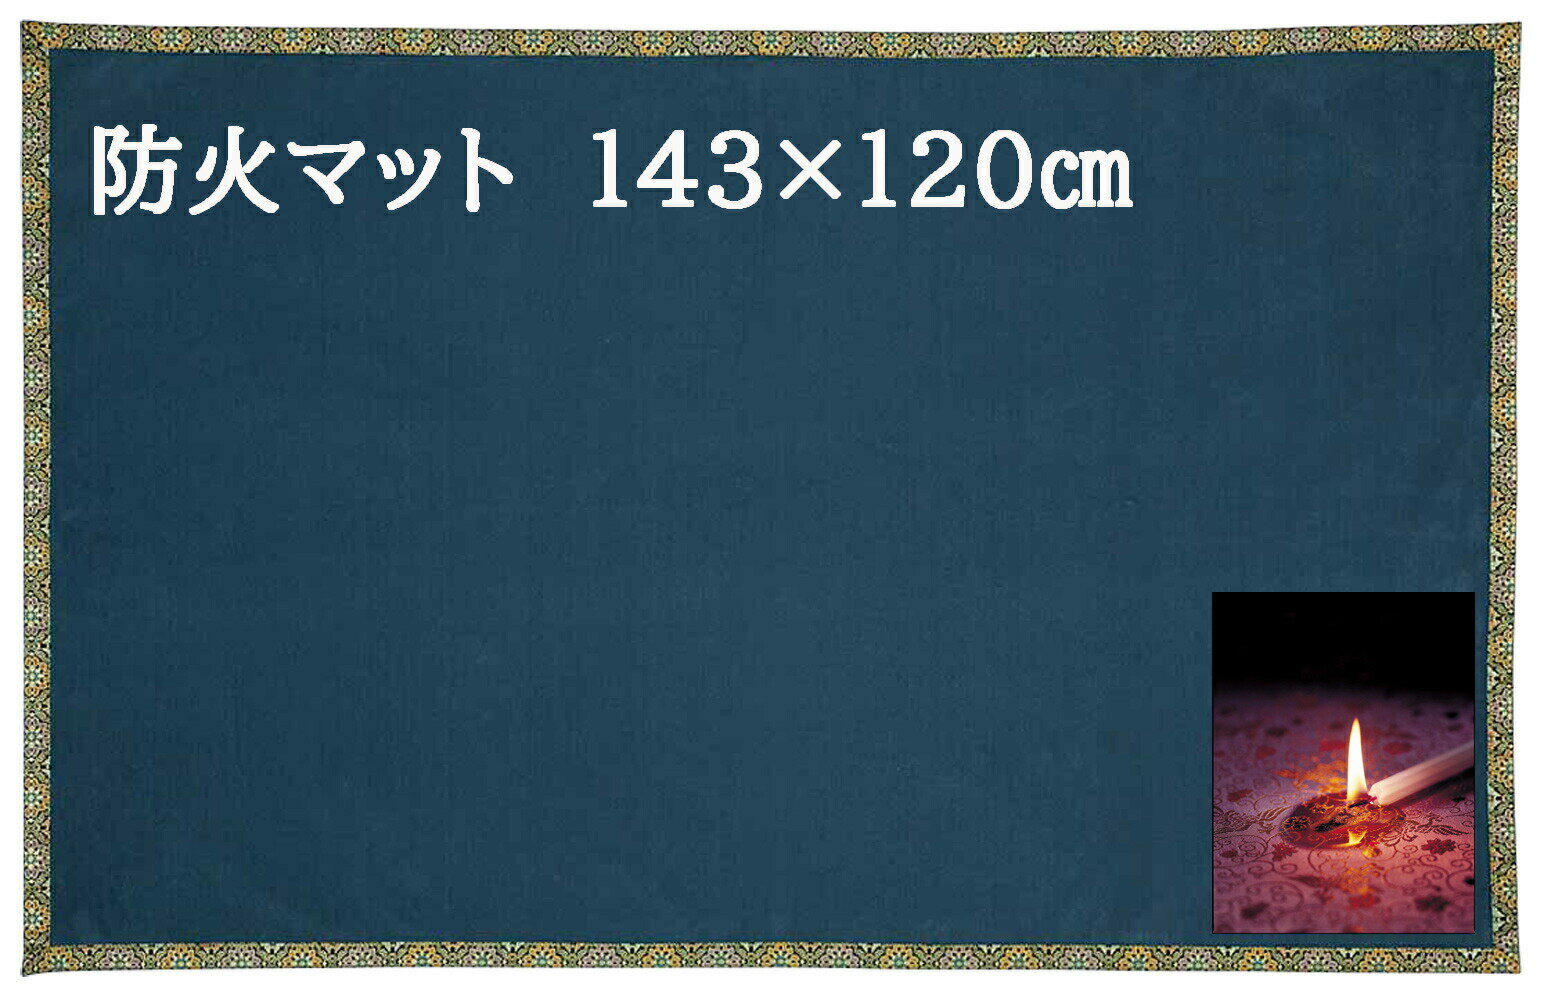 仏壇 仏前 防火マット 安全 防炎 難燃 素材利用 (経机の下など) 日本製 難燃加工のマット 143×120センチ